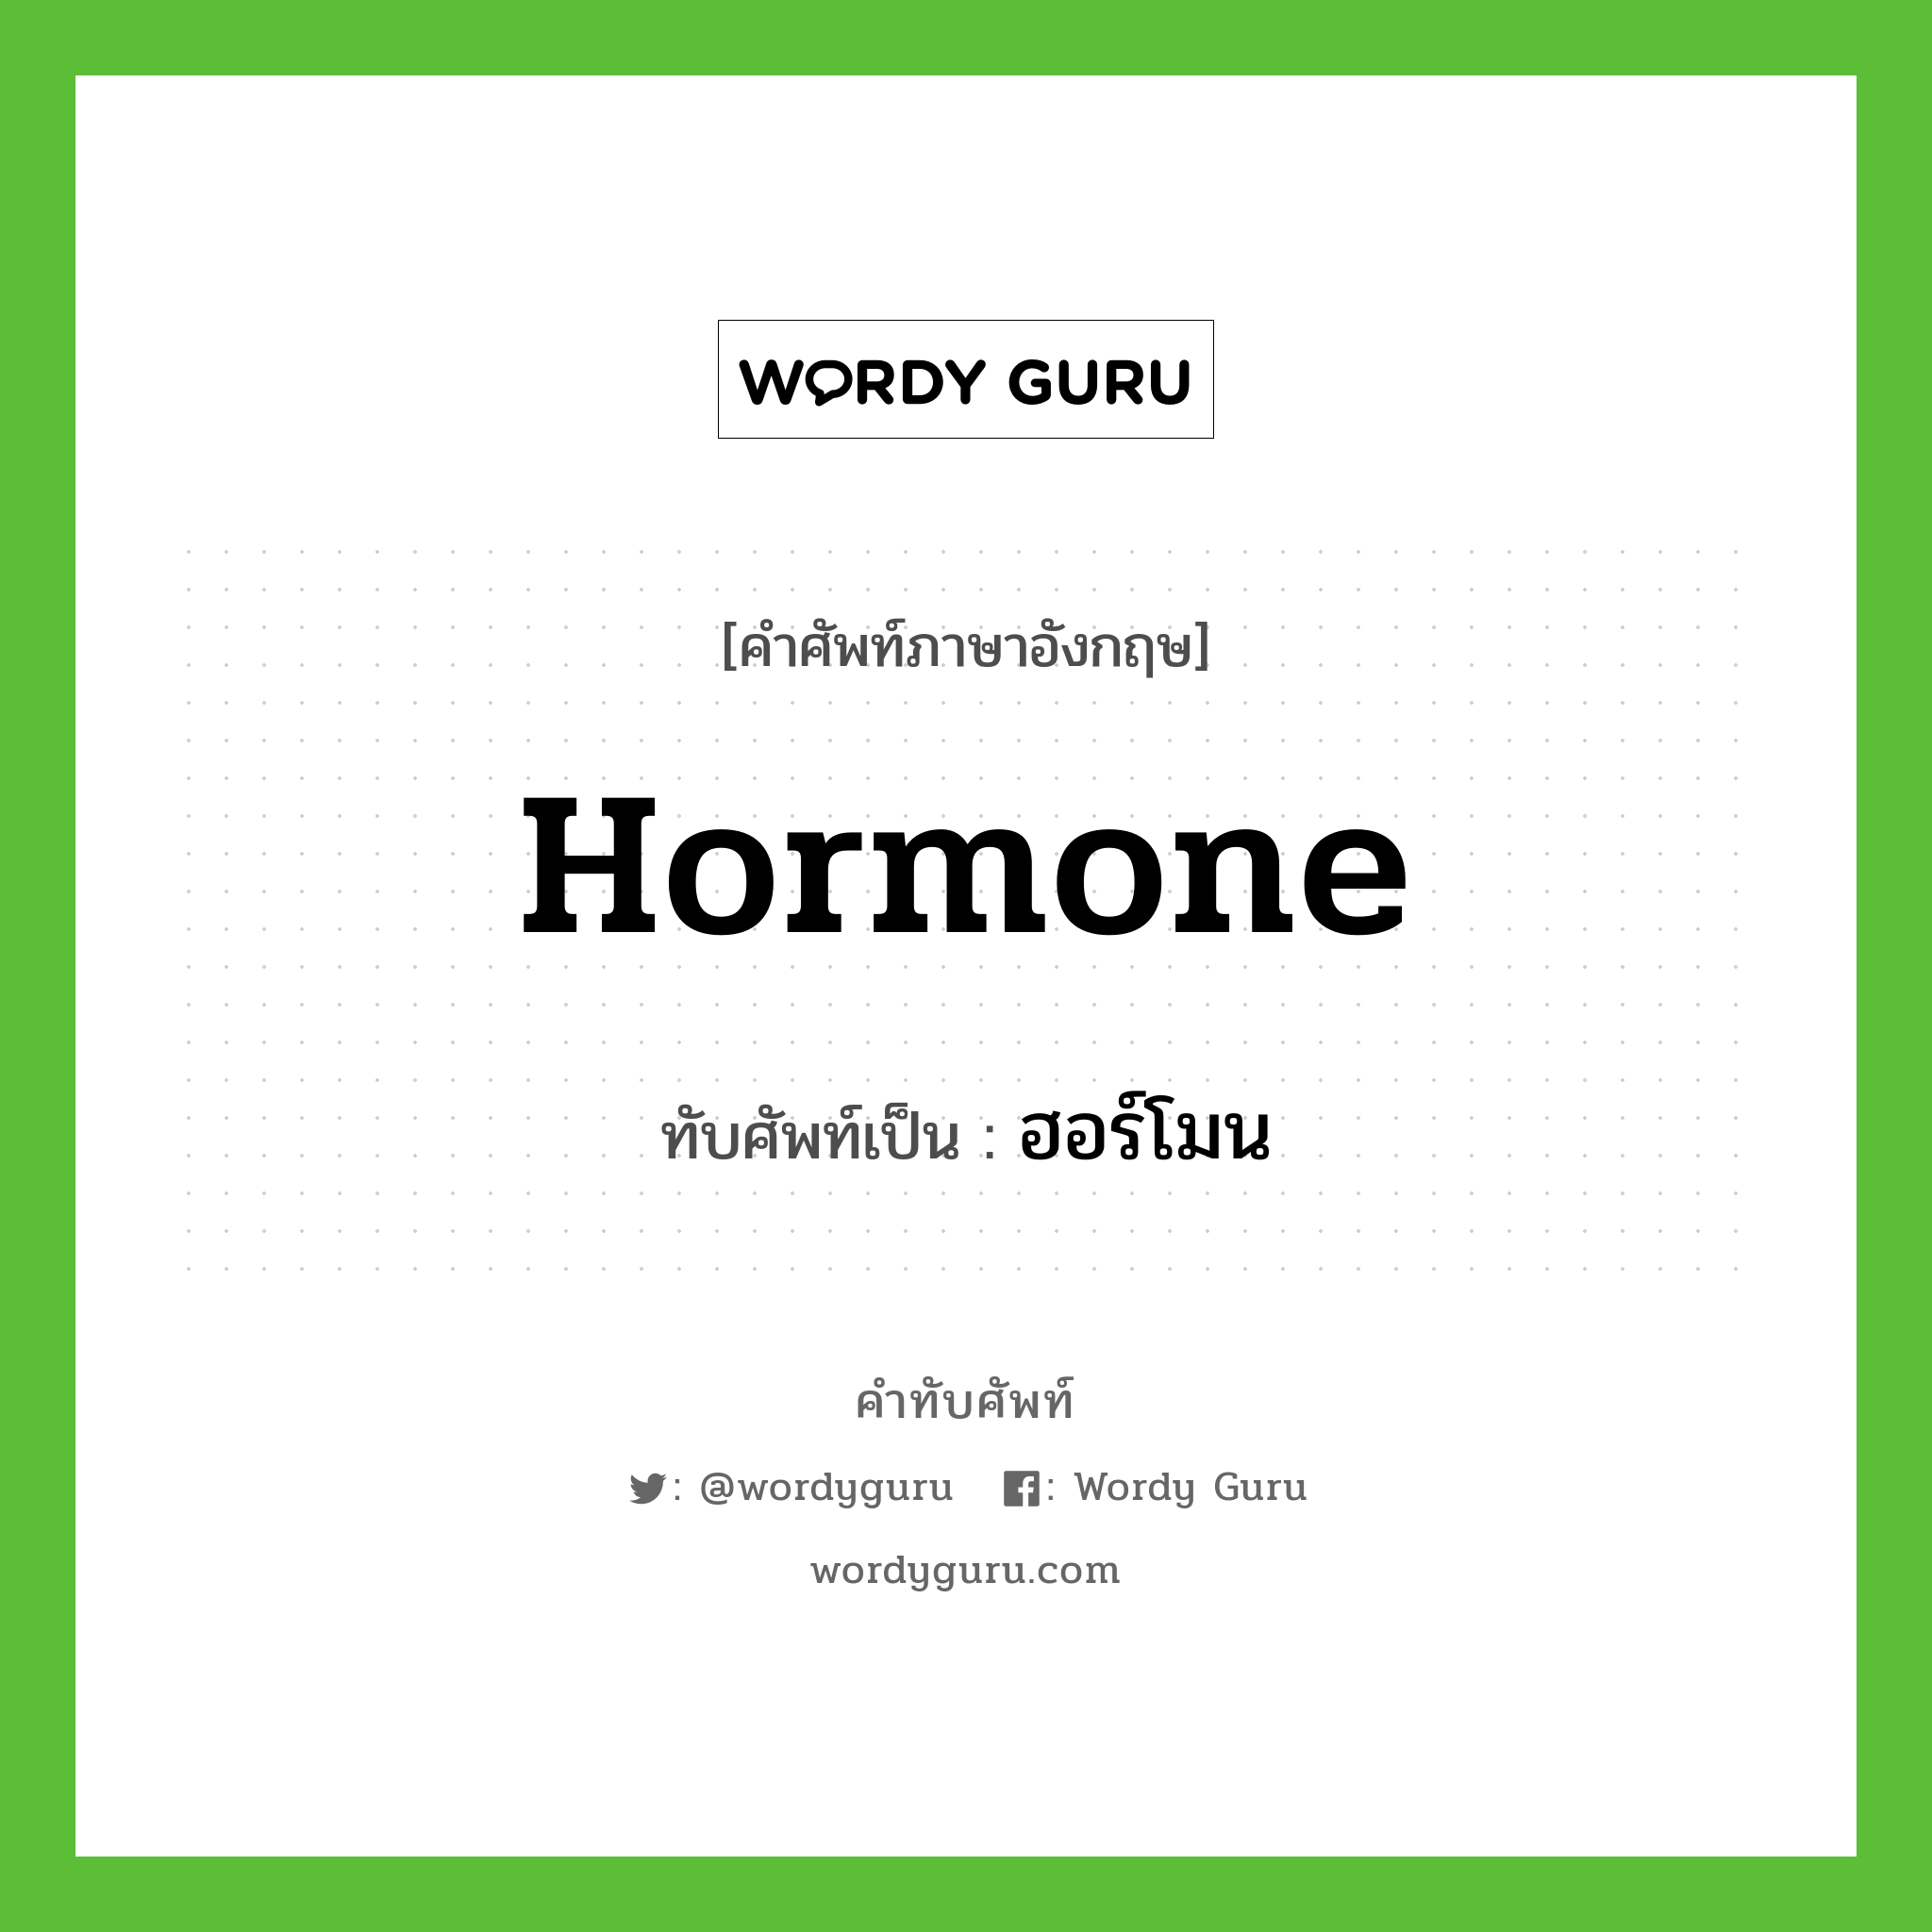 hormone เขียนเป็นคำไทยว่าอะไร?, คำศัพท์ภาษาอังกฤษ hormone ทับศัพท์เป็น ฮอร์โมน